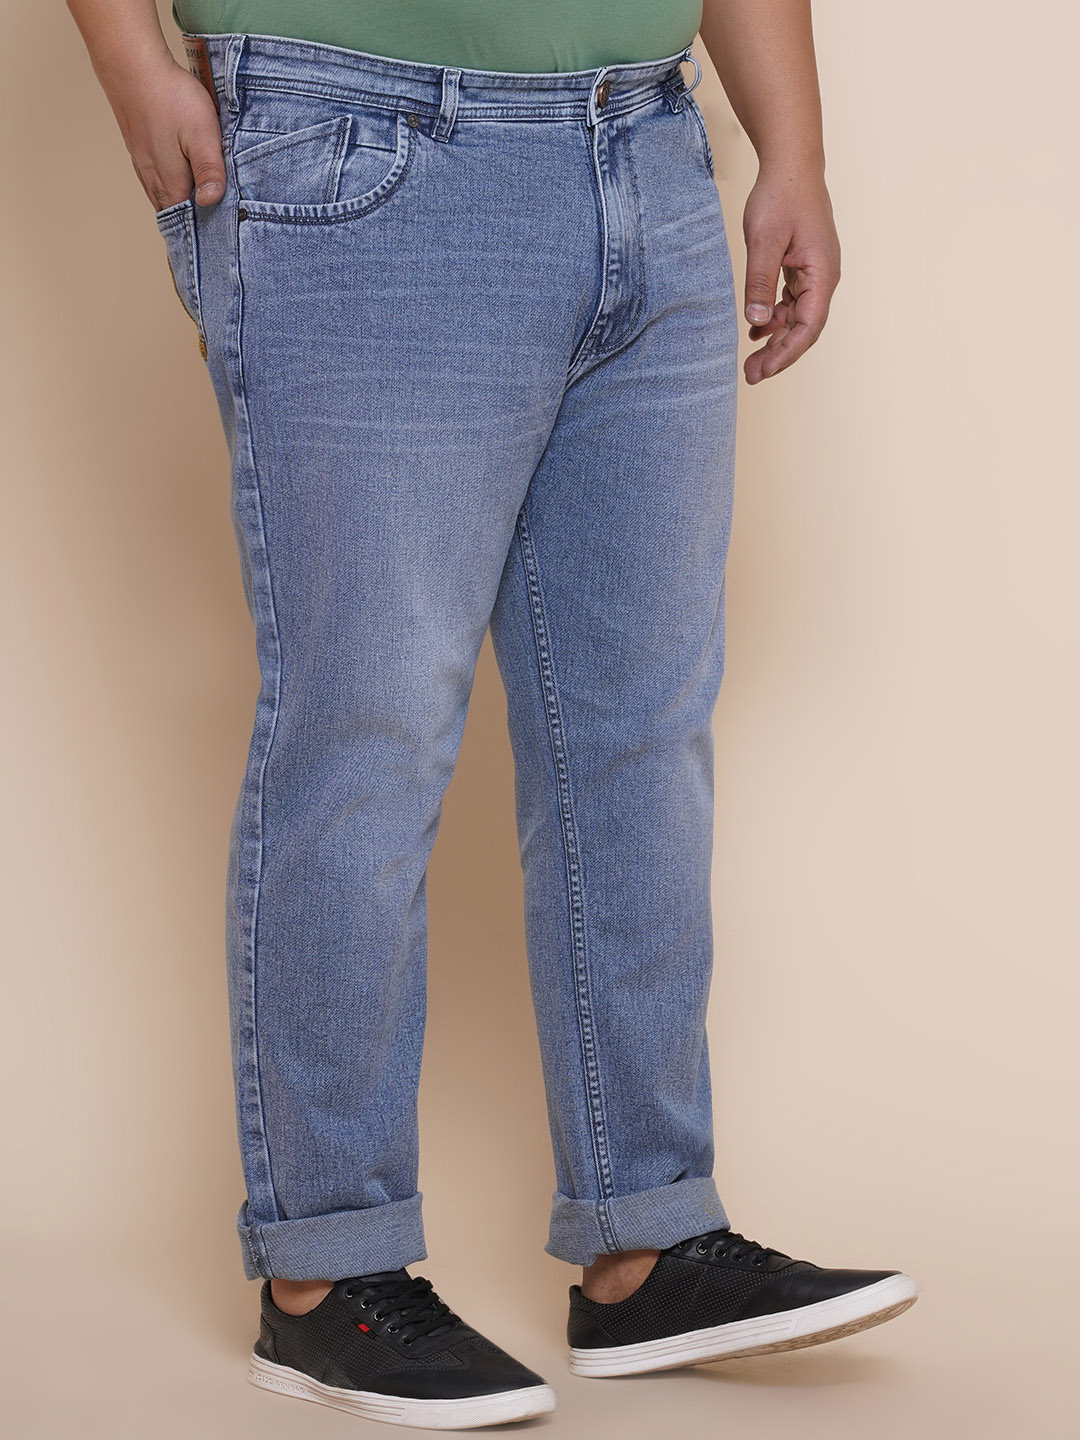 bottomwear/jeans/EJPJ25081/ejpj25081-4.jpg